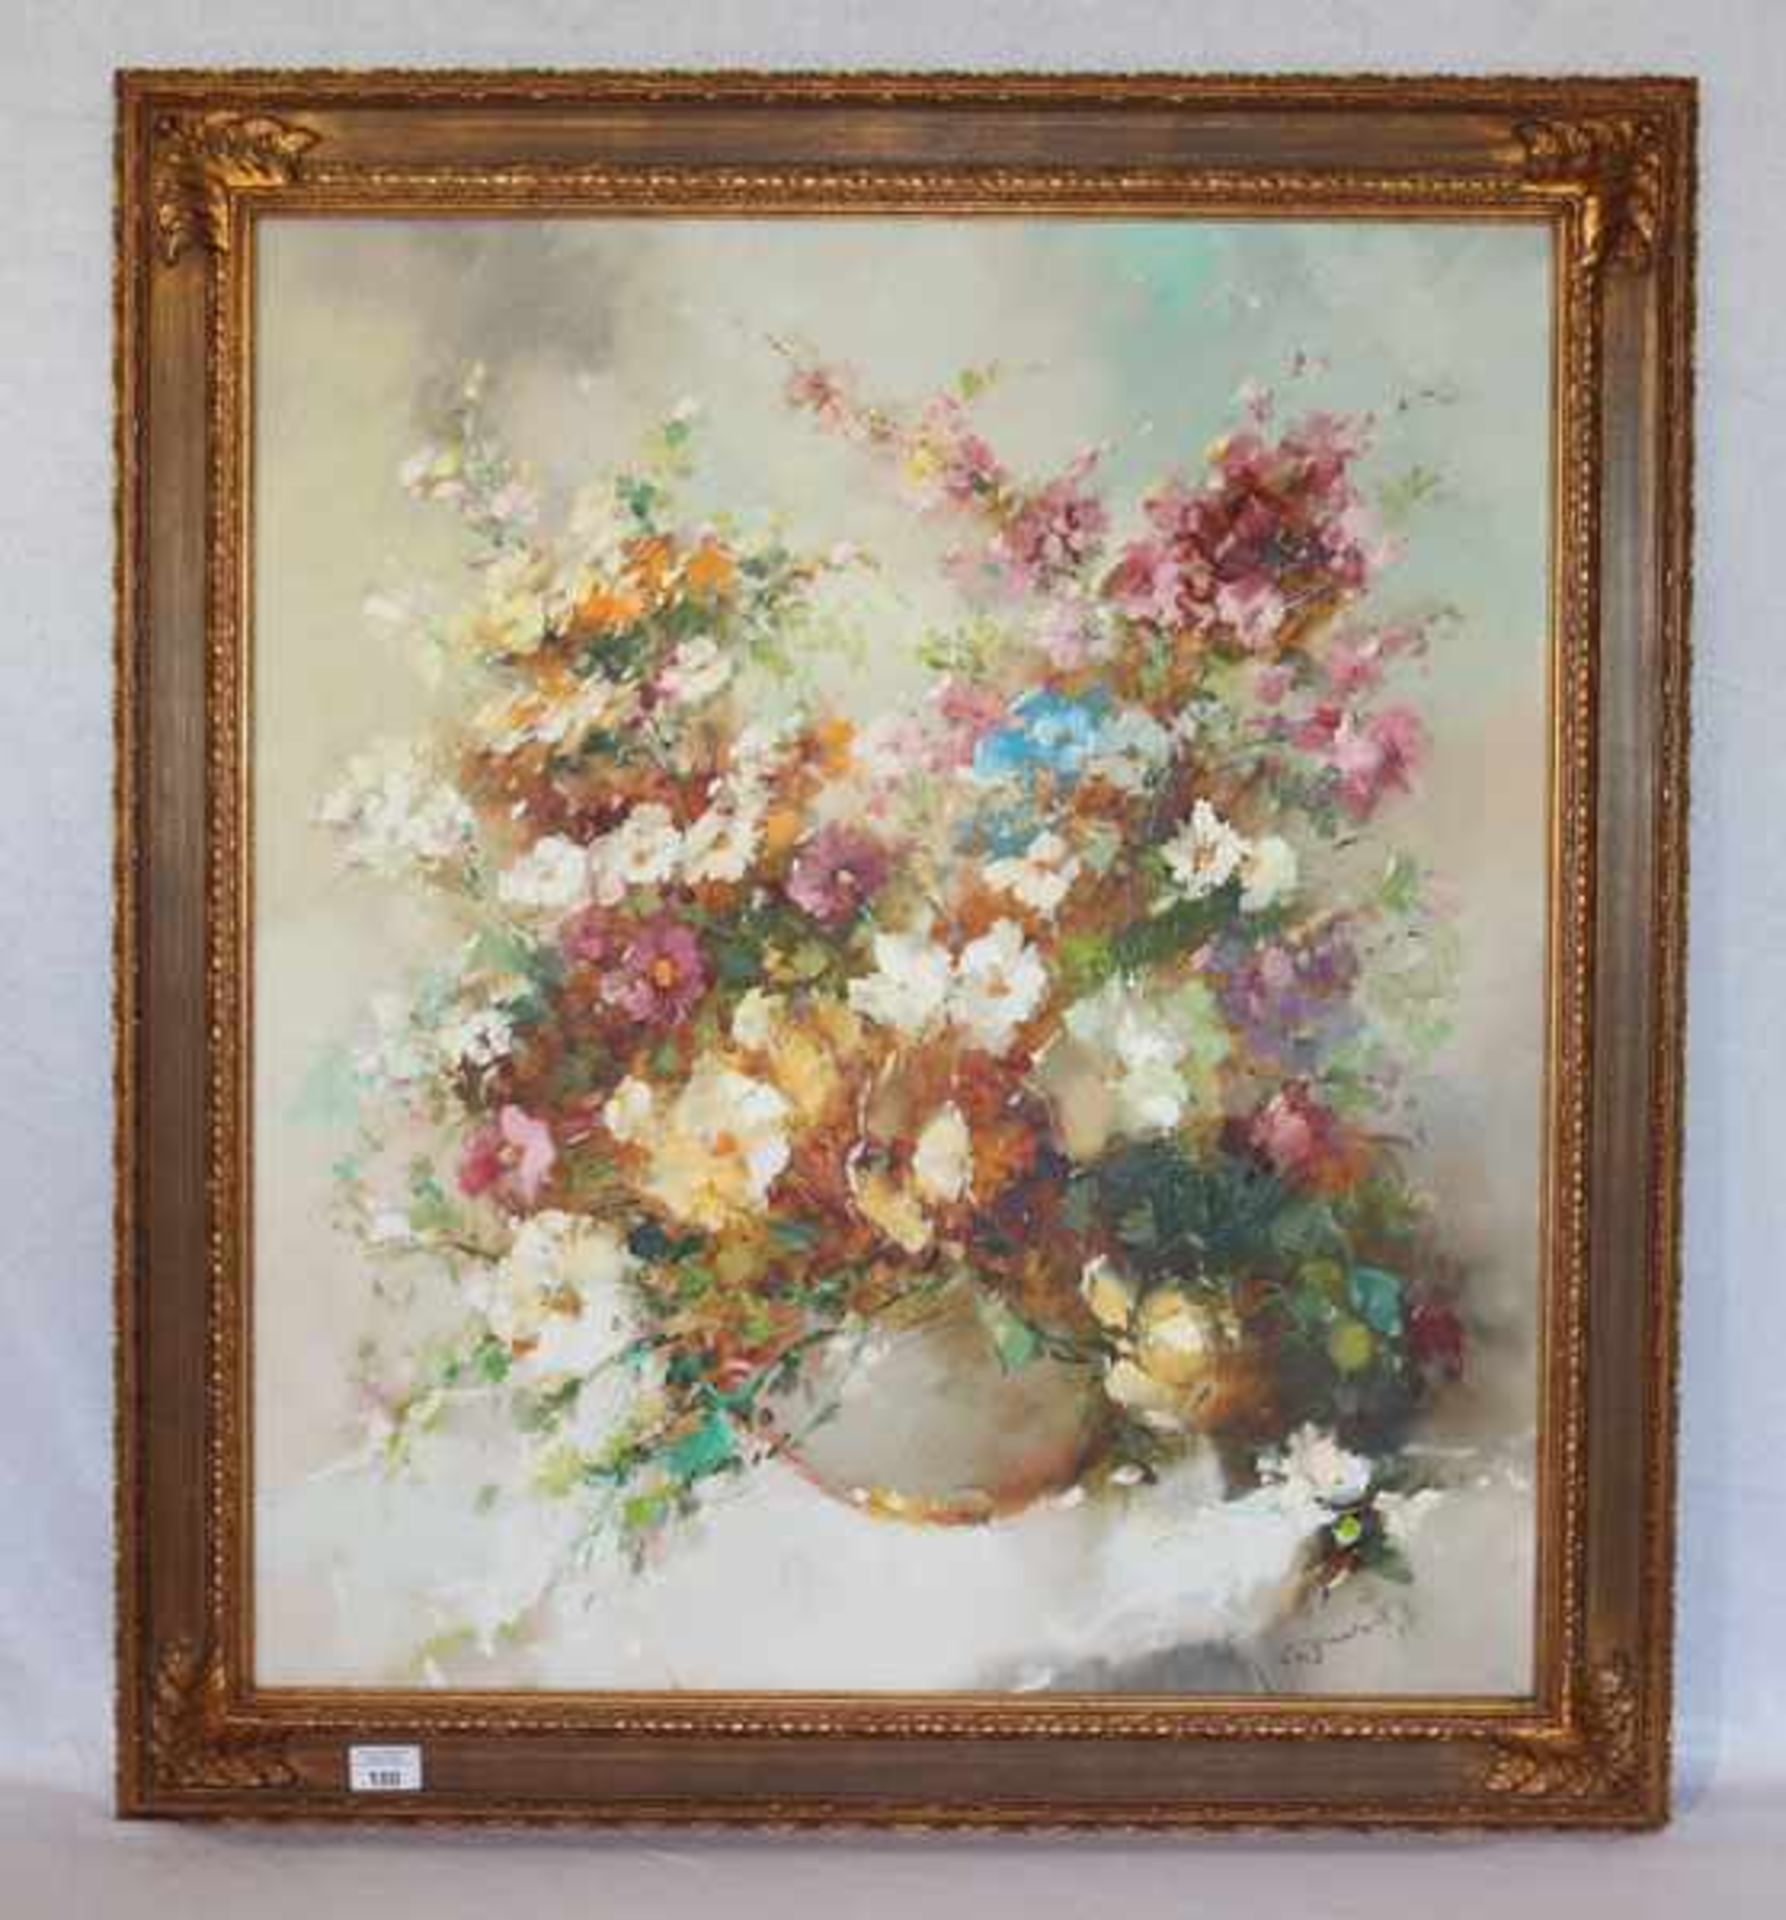 Gemälde ÖL/LW 'Blumenstillleben in Vase', undeutlich signiert, gerahmt, incl. Rahmen 95 cm x 85 cm